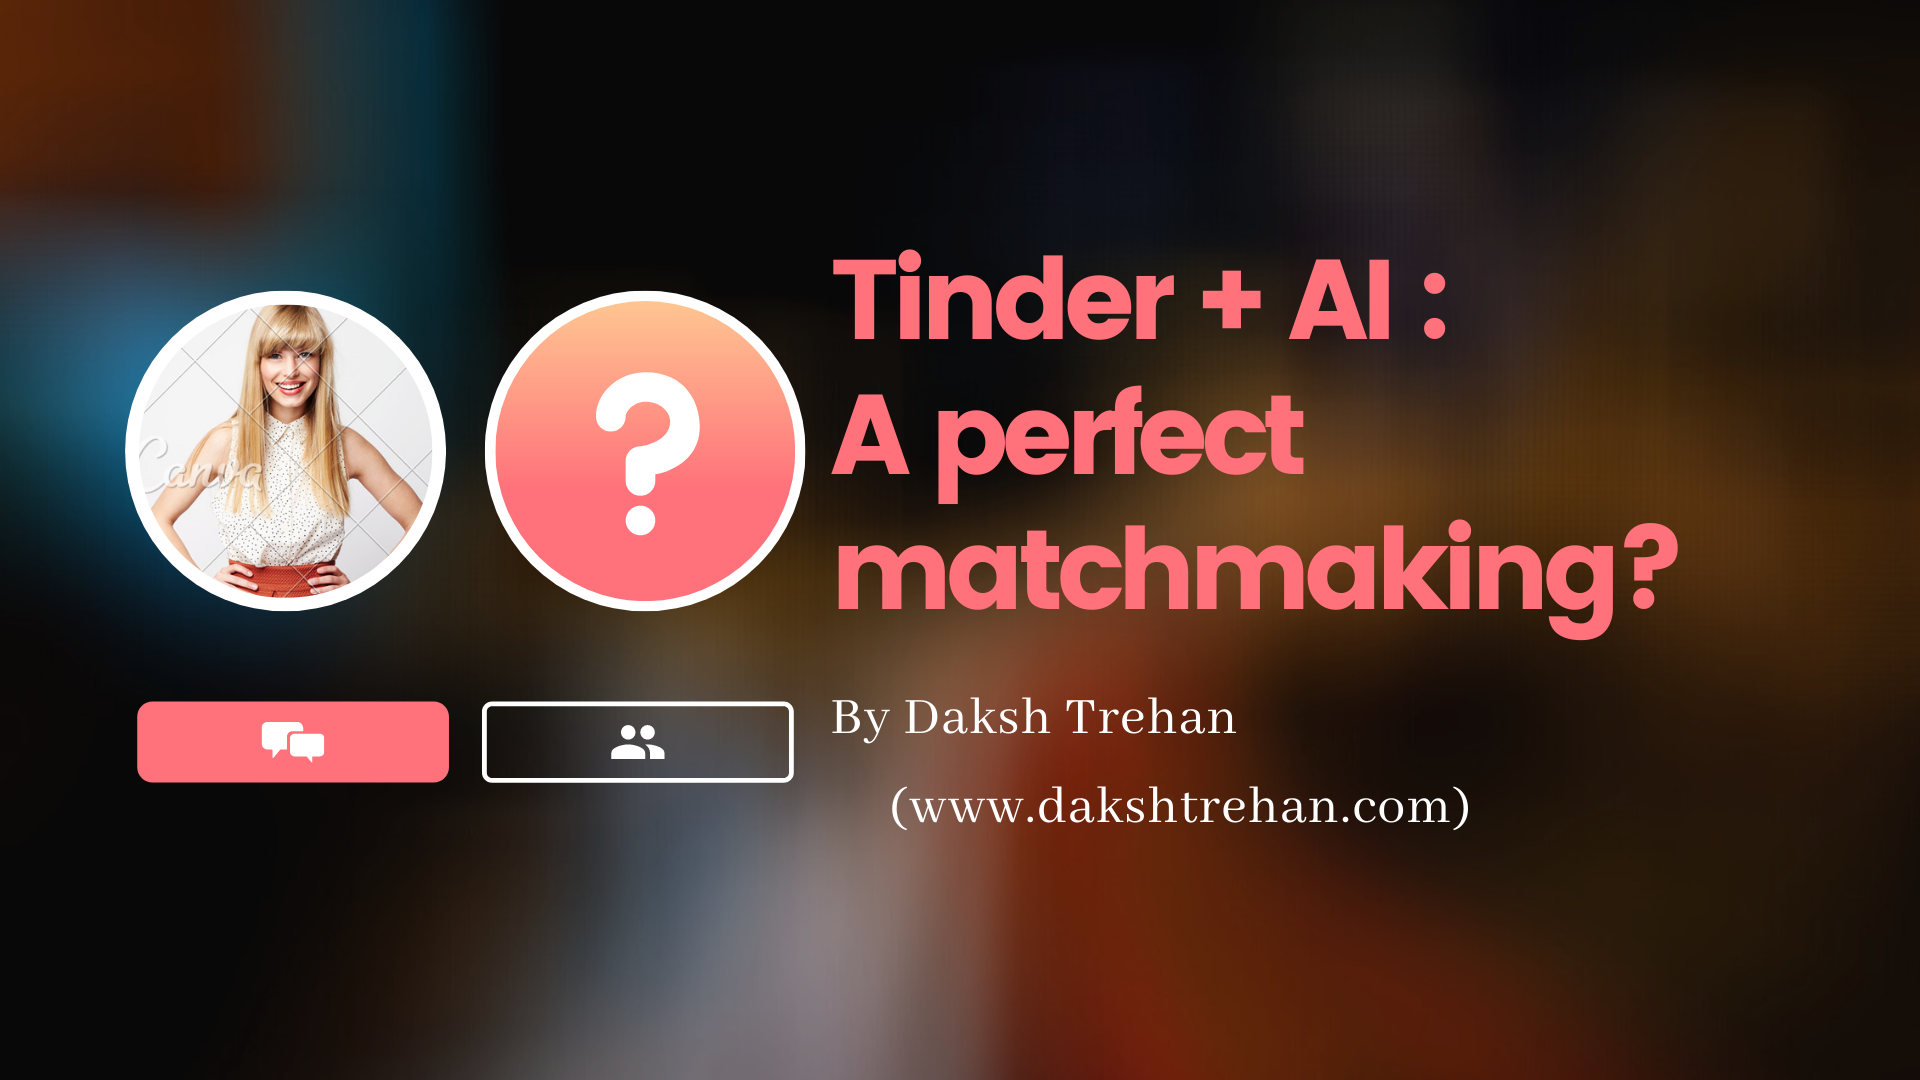 Tinder + AI: A Perfect Matchmaking?